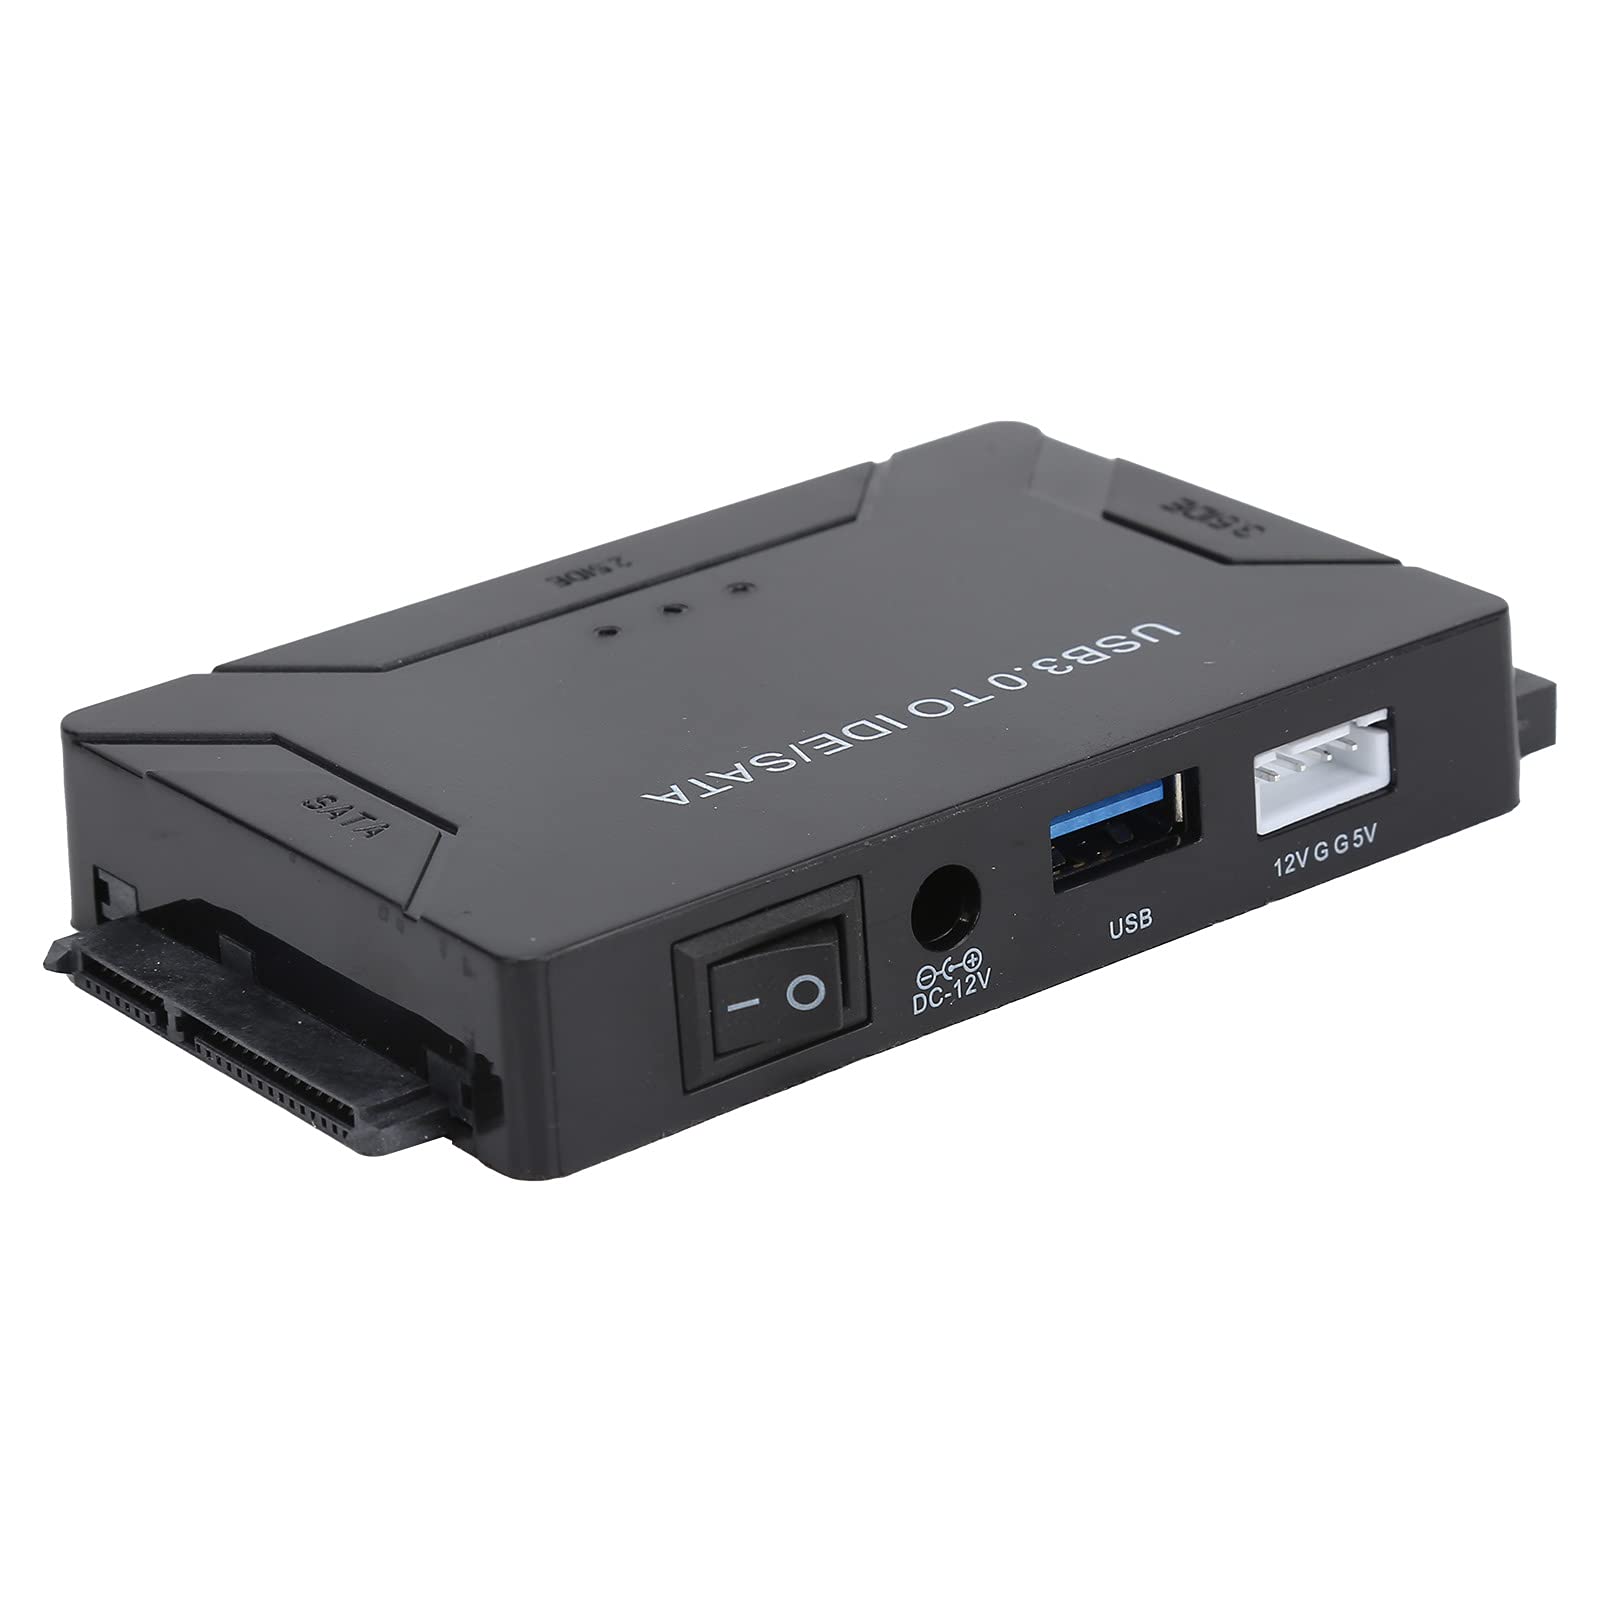 USB 3.0 zu SATA/IDE Konverter Externes Festplatten-Adapter-Set für Universelle 2.5/3.5 IDE HDD/SSD Festplatten, DVD ROM CD-ROM CO-RW DVD-RW DVD+RW und Andere, Unterstützt 4 TB(EU)